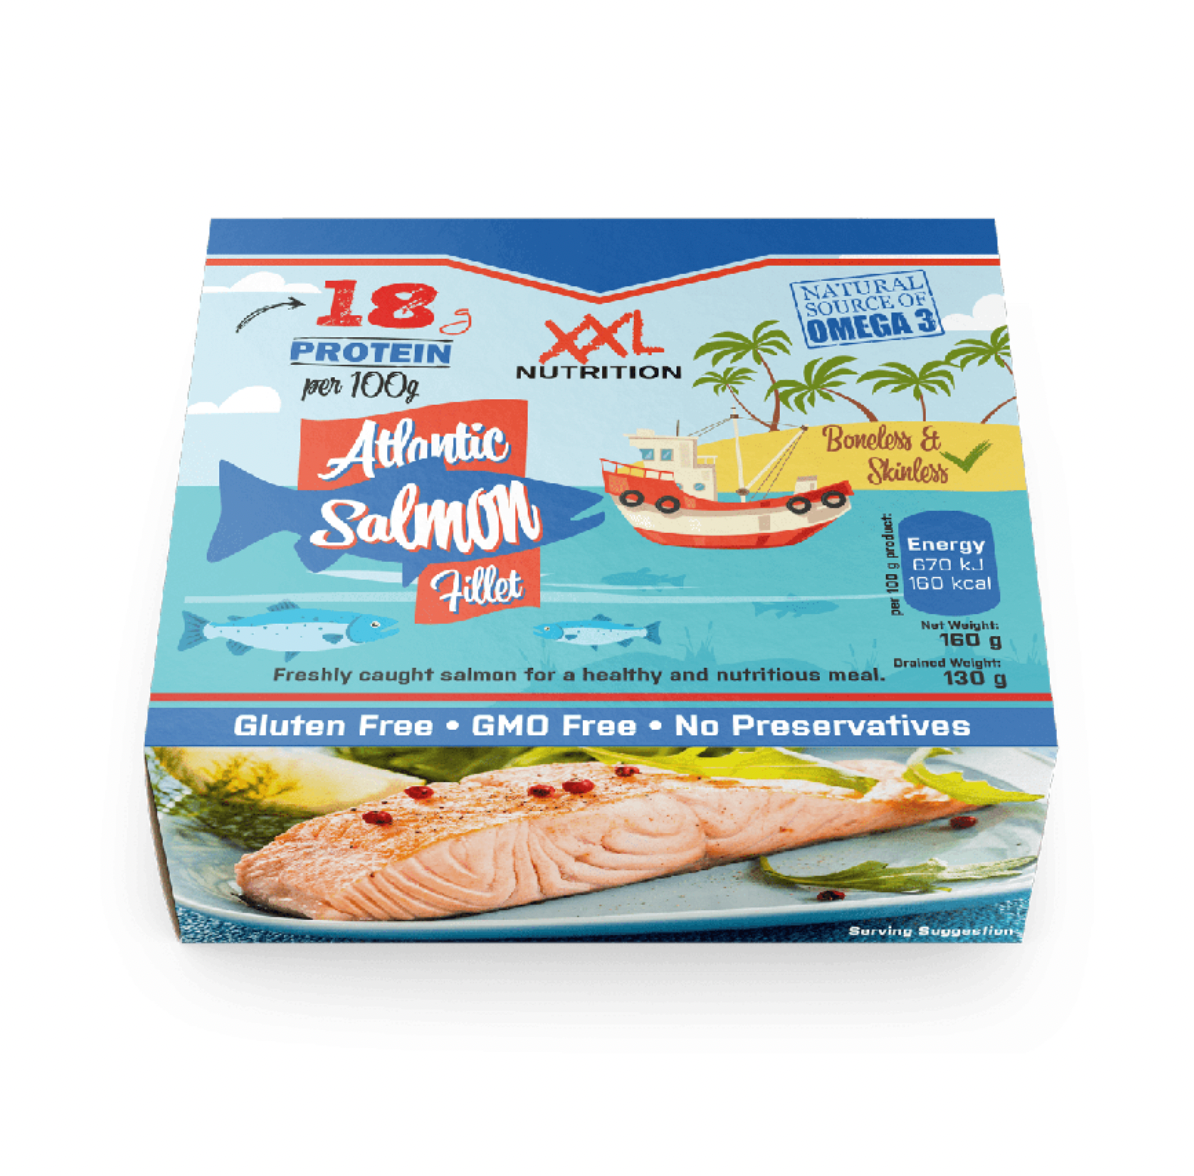 XXL Nutrition Ready to Eat Salmon